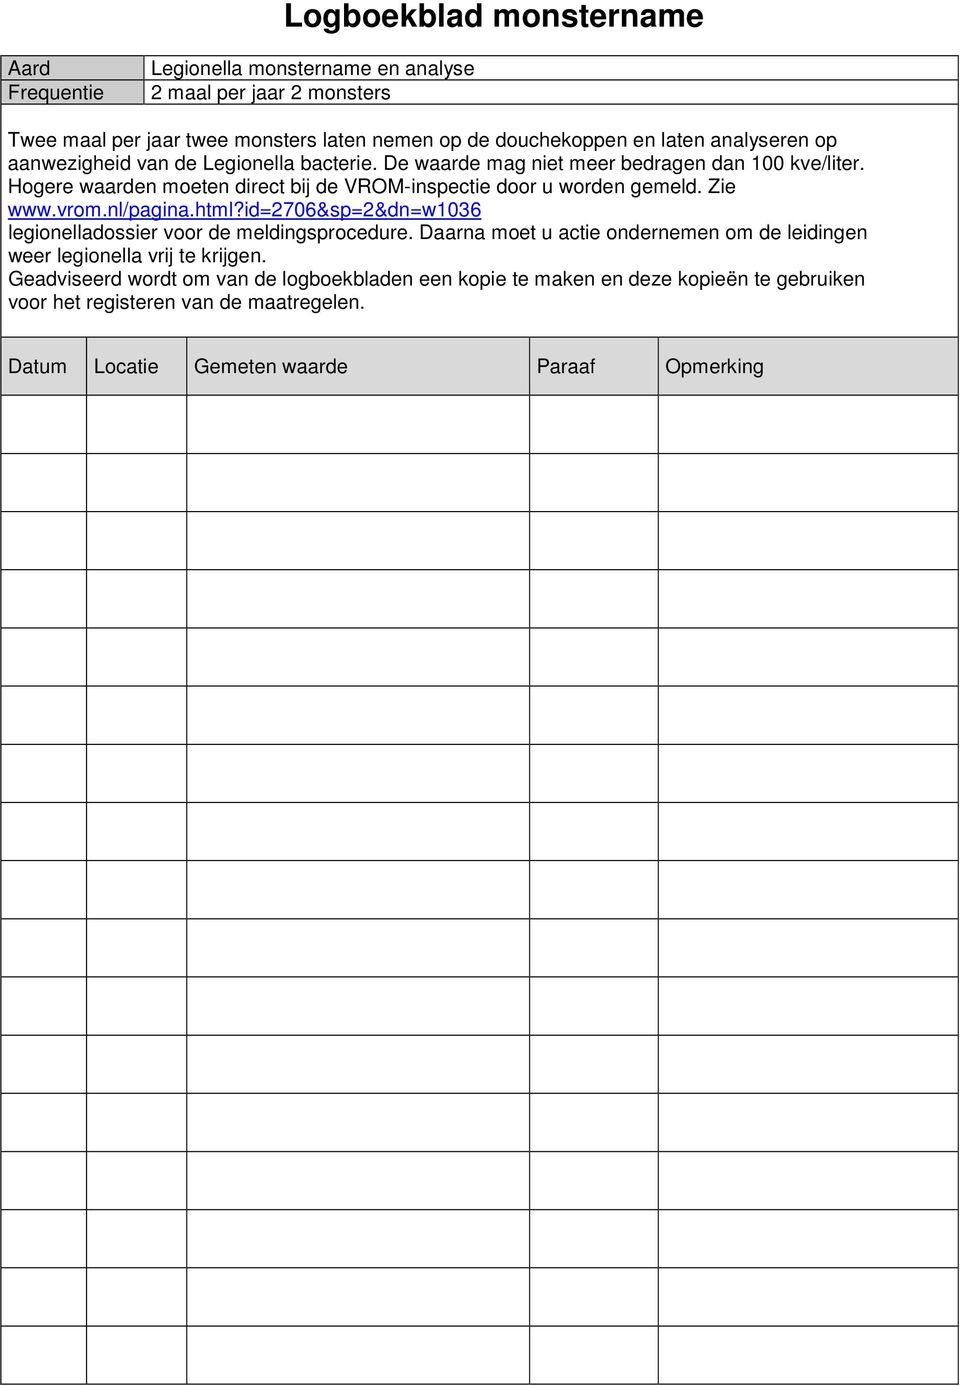 Hogere waarden moeten direct bij de VROM-inspectie door u worden gemeld. Zie www.vrom.nl/pagina.html?id=2706&sp=2&dn=w1036 legionelladossier voor de meldingsprocedure.